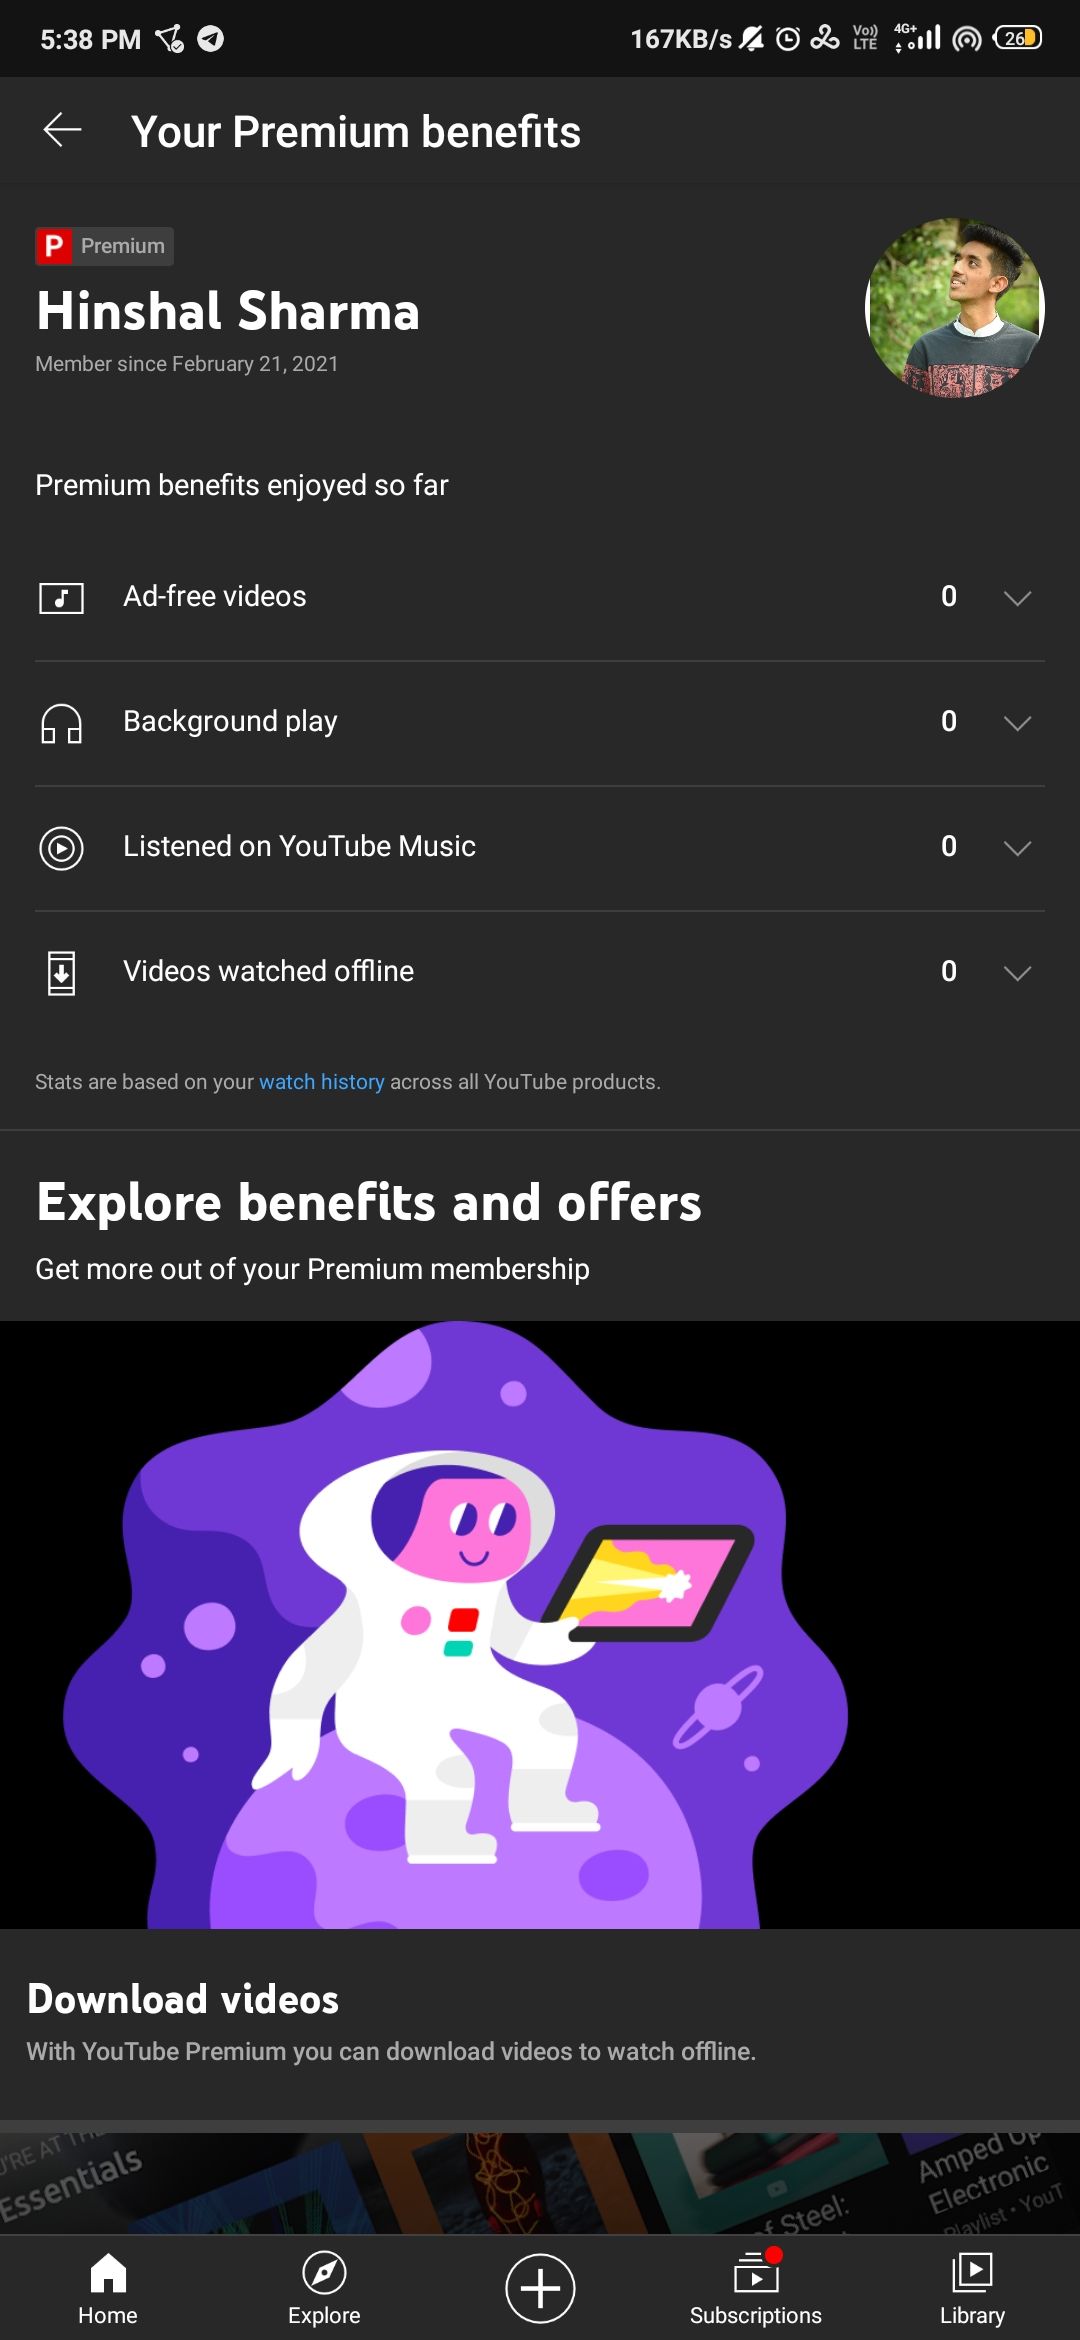 YouTube Premium benefits